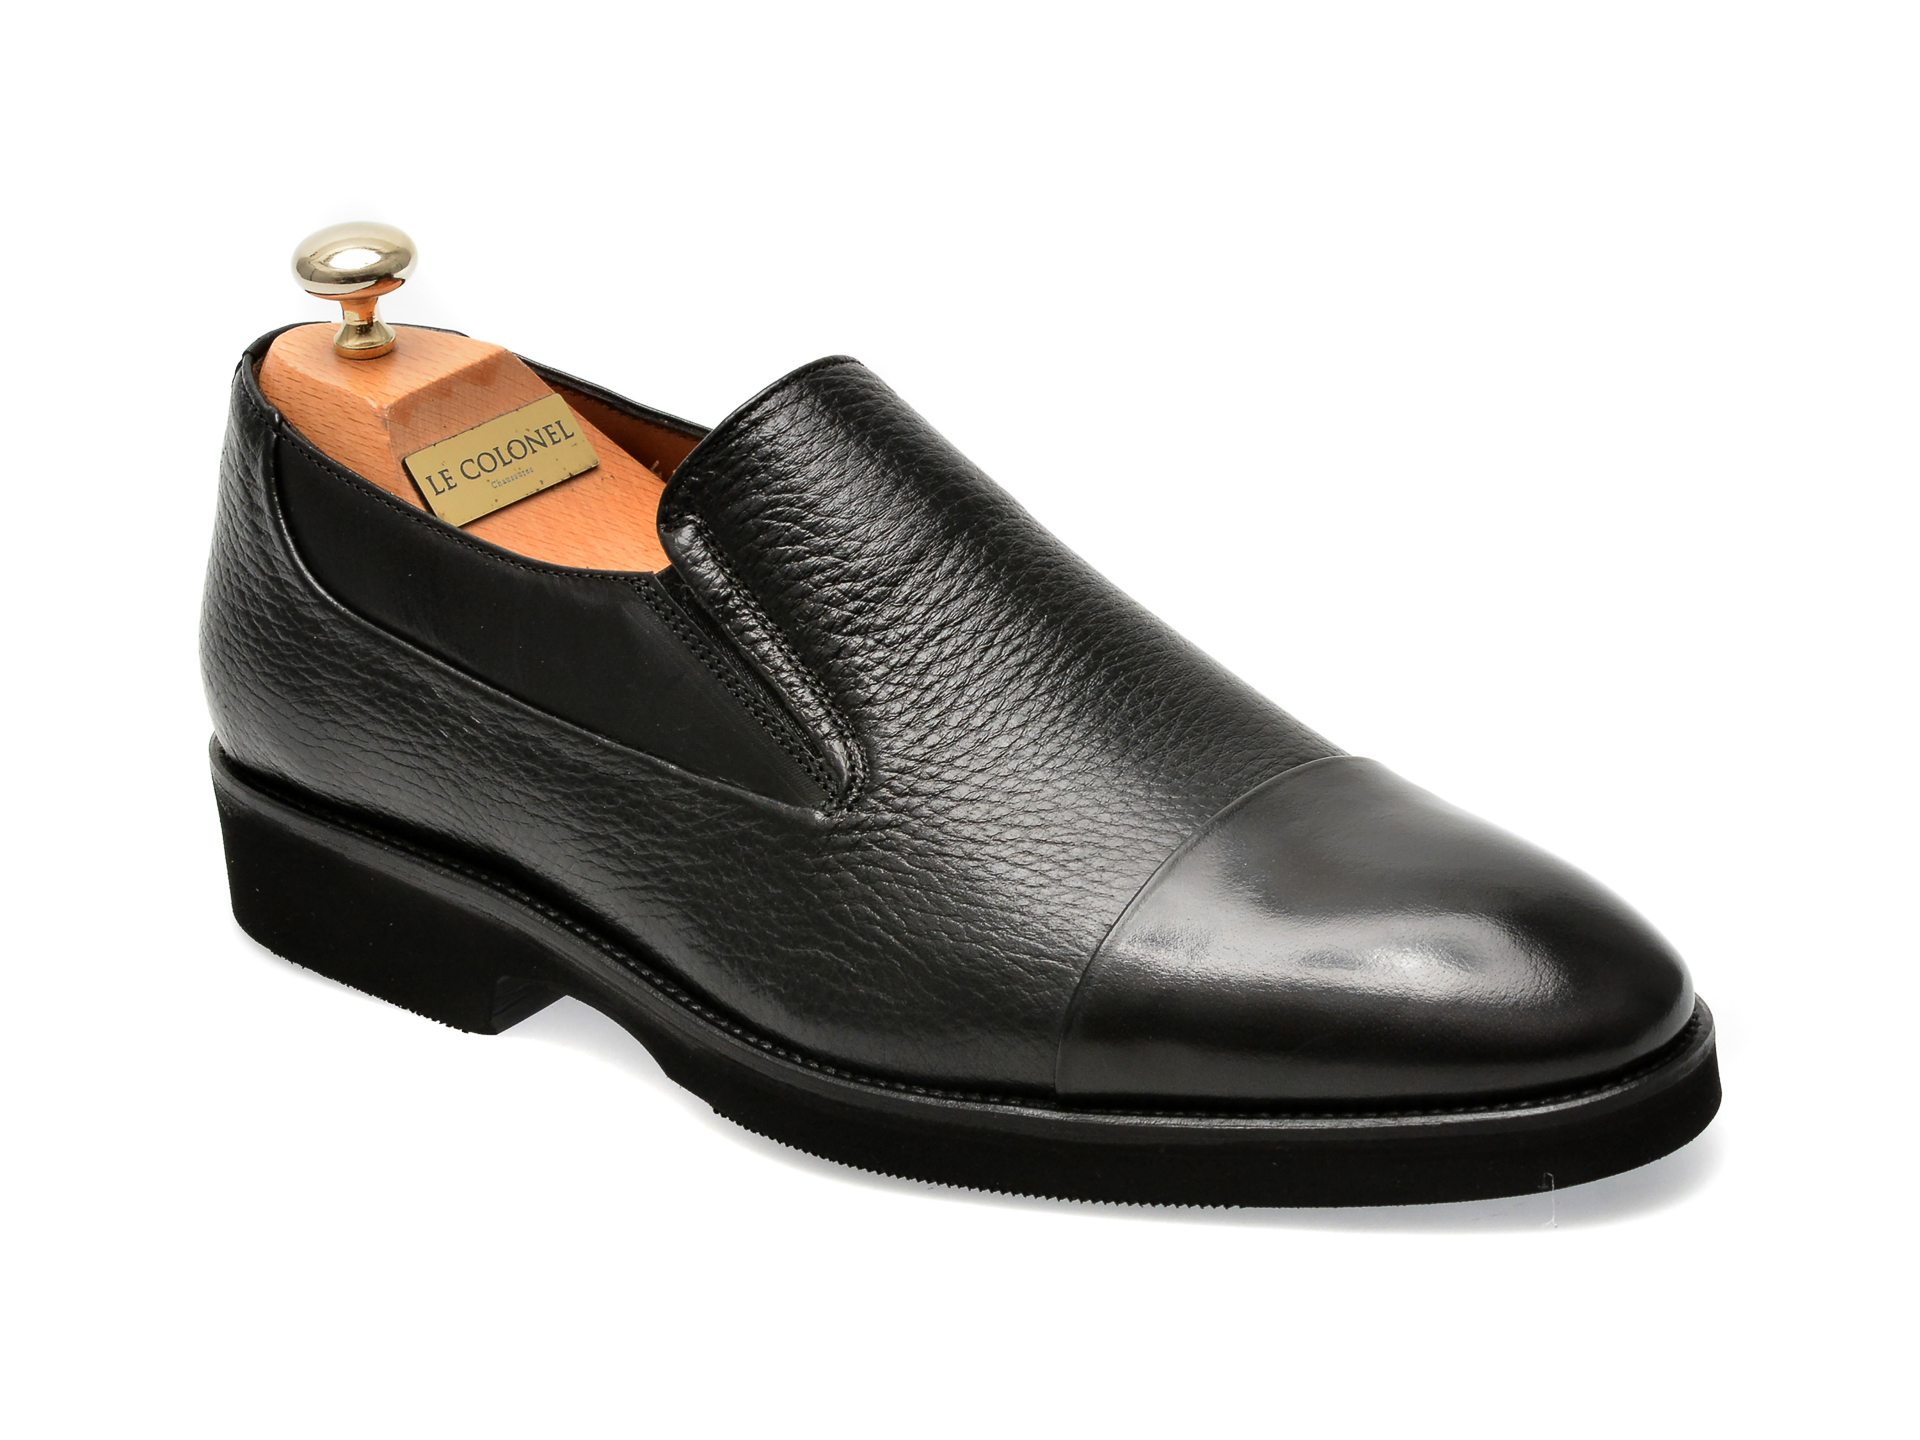 Pantofi LE COLONEL negri, 49879, din piele naturala barbati 2023-09-21